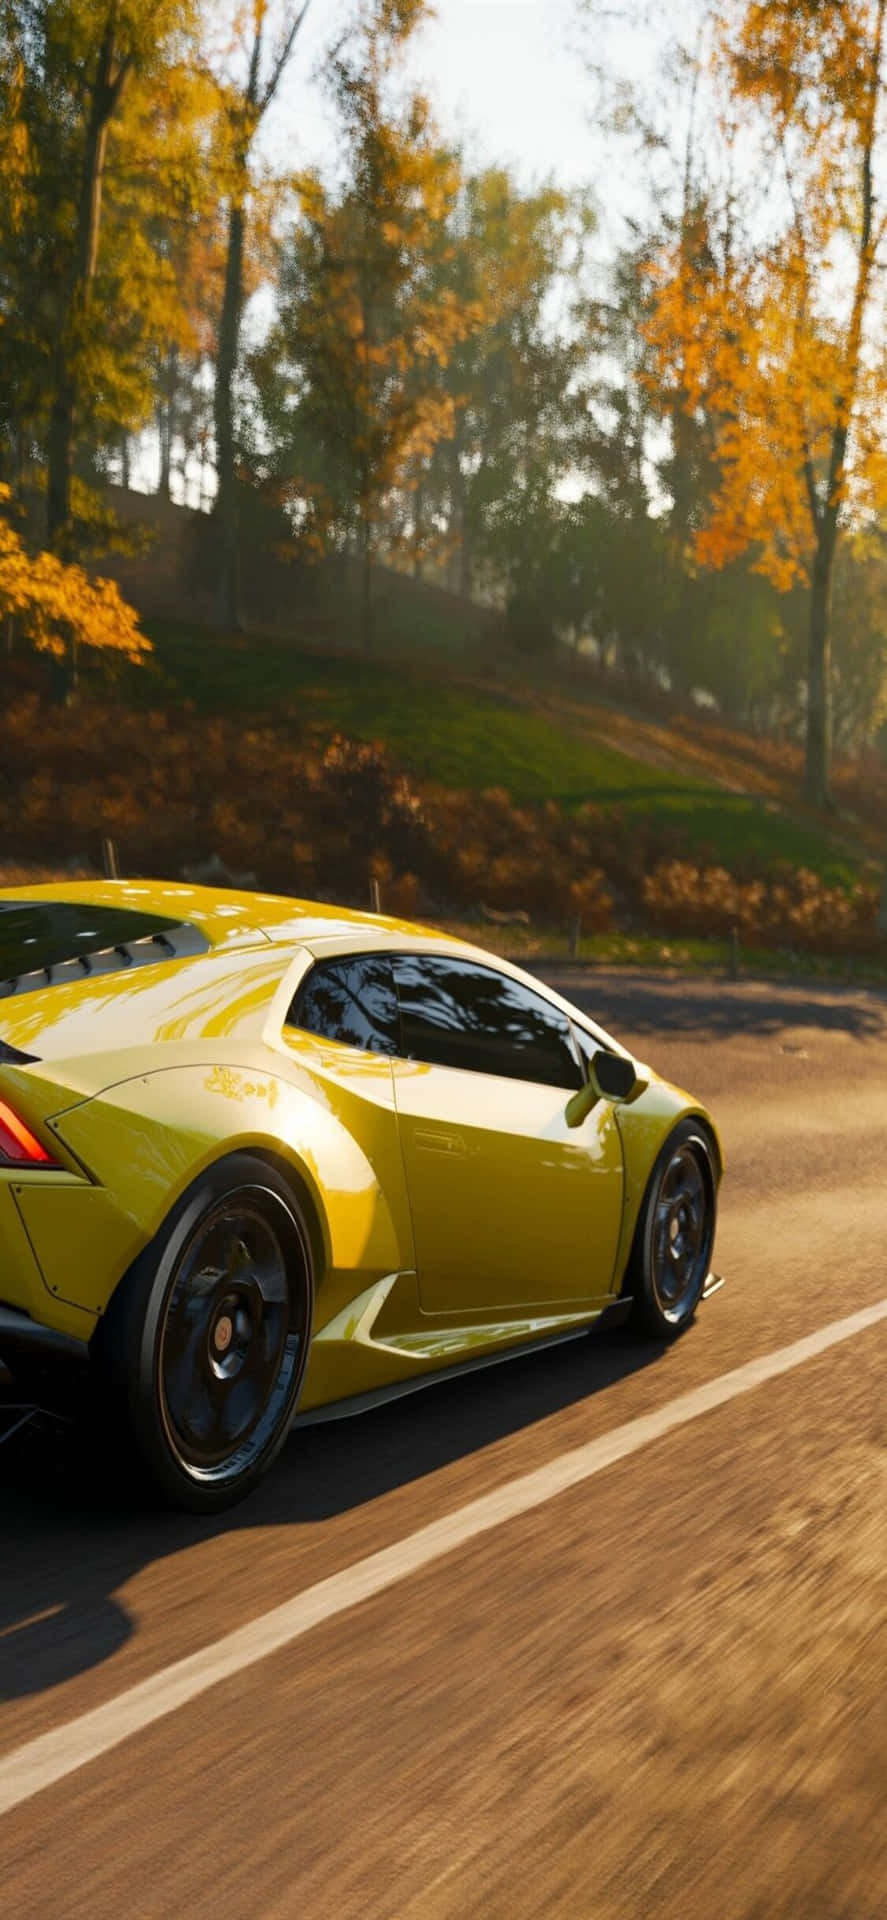 Planode Fundo Do Forza Motorsport 7 Com Um Lamborghini Huracan Dourado No Iphone X.